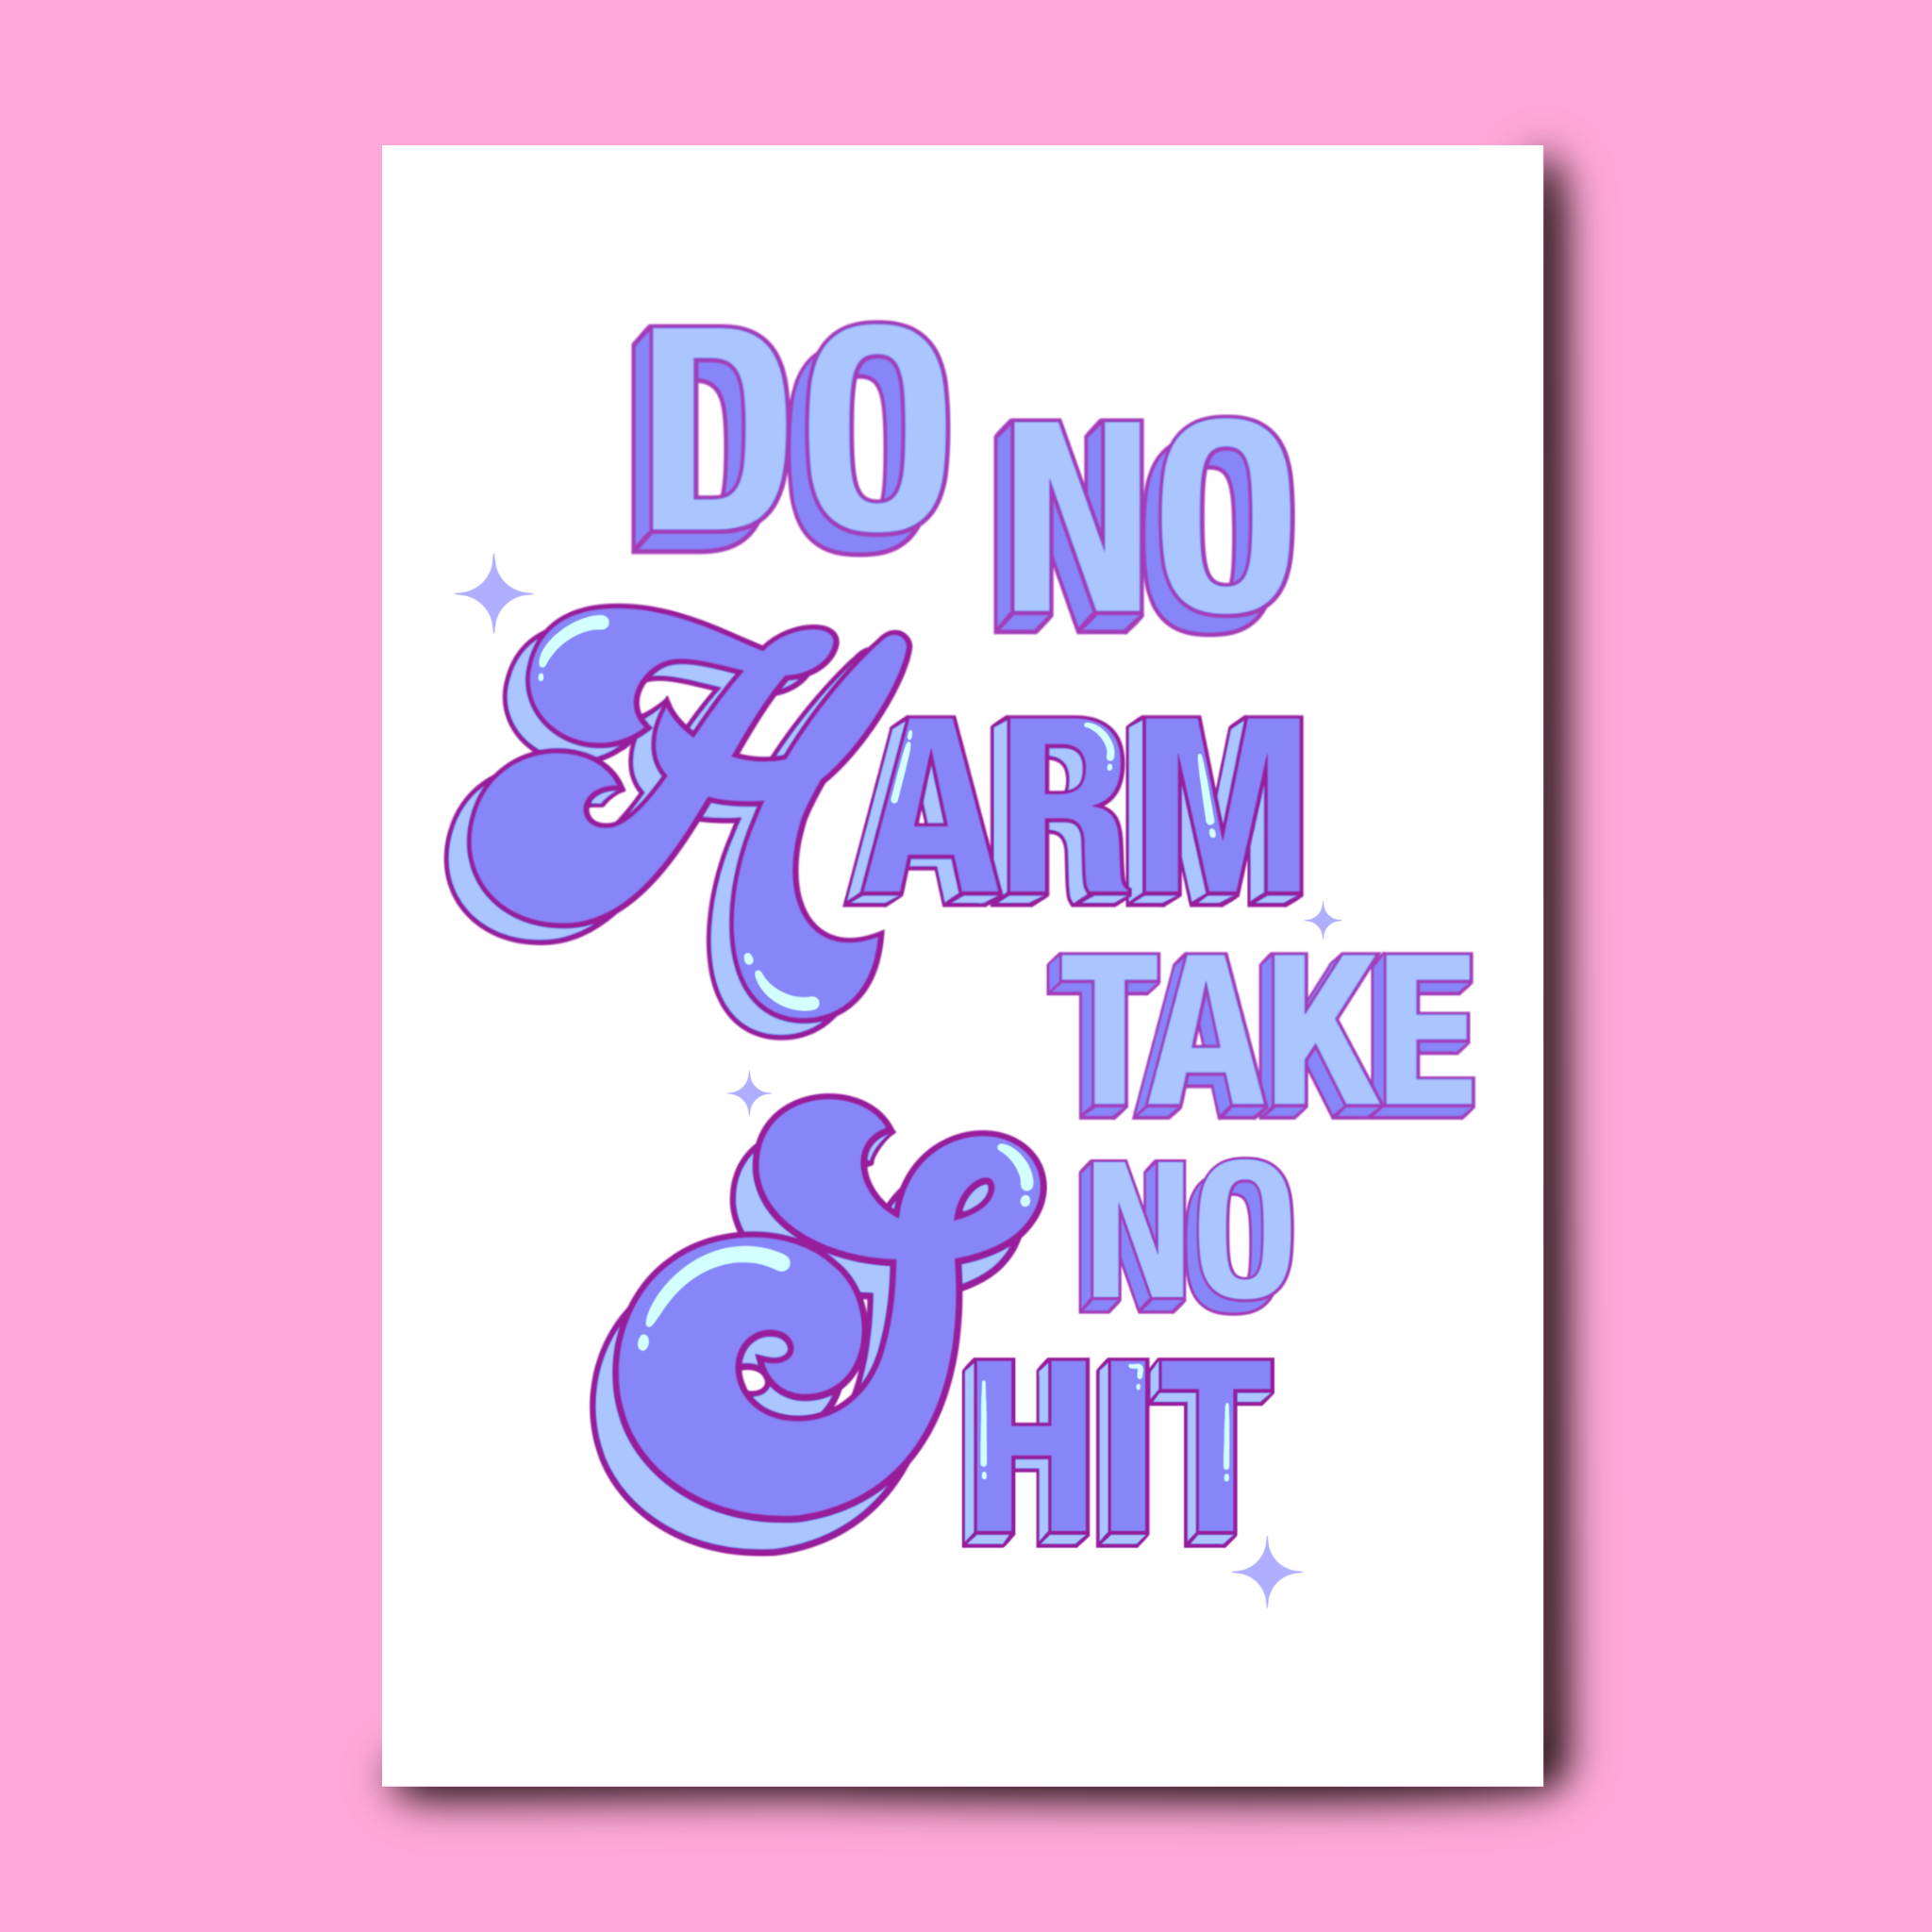 Do no harm, take no sh*t print